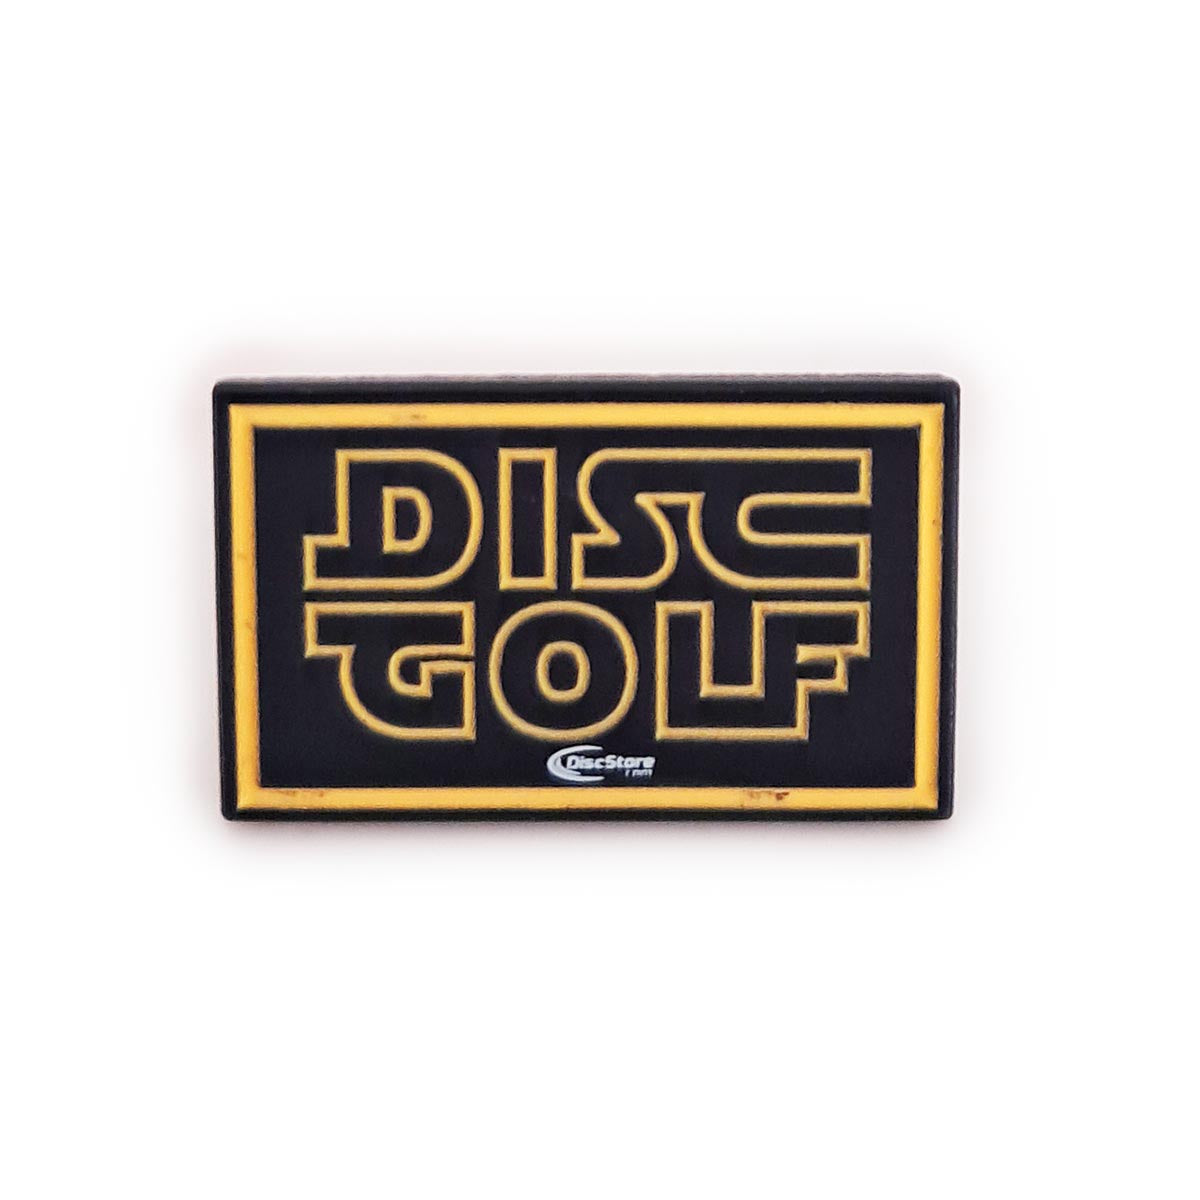 Disc Golf Galaxy Tee